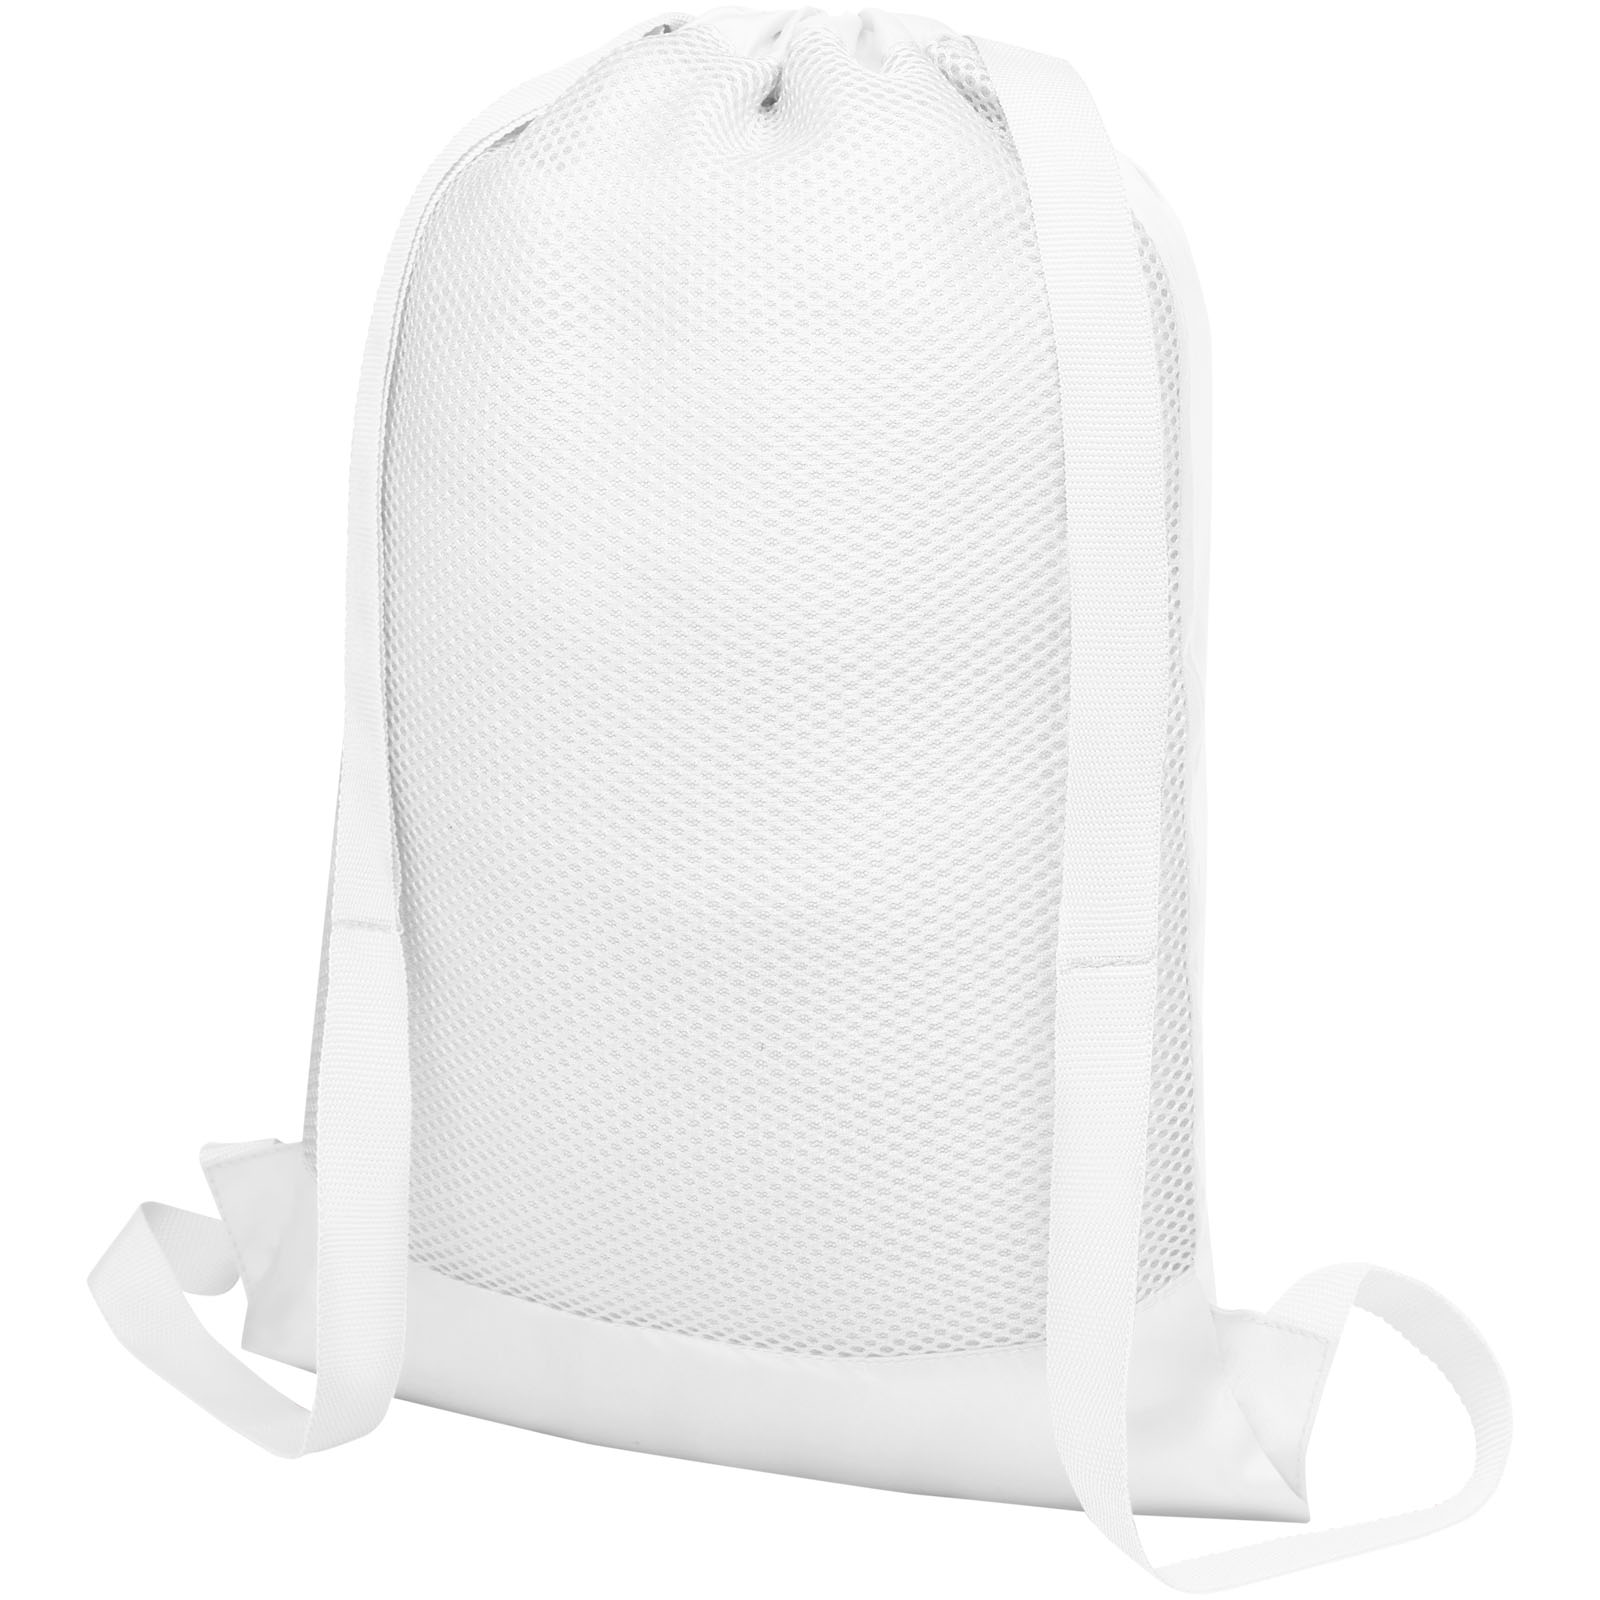 Bags - Nadi mesh drawstring bag 5L